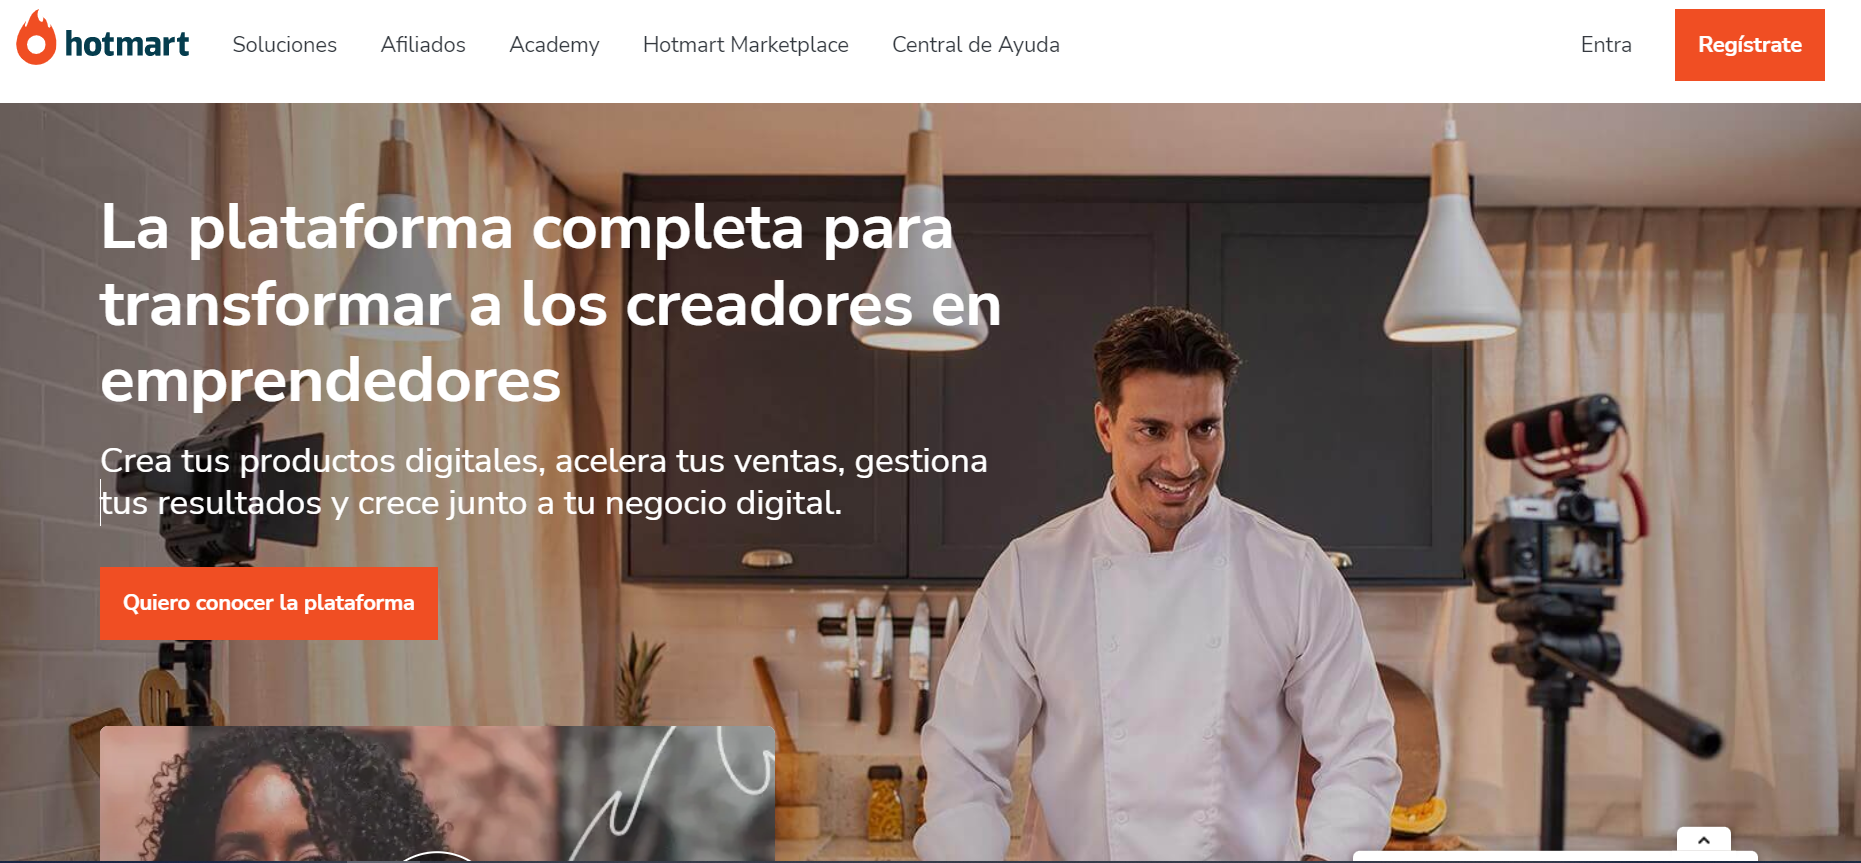 Imagen de la captura de pantalla del menú principal del sitio web de Hotmart en español.